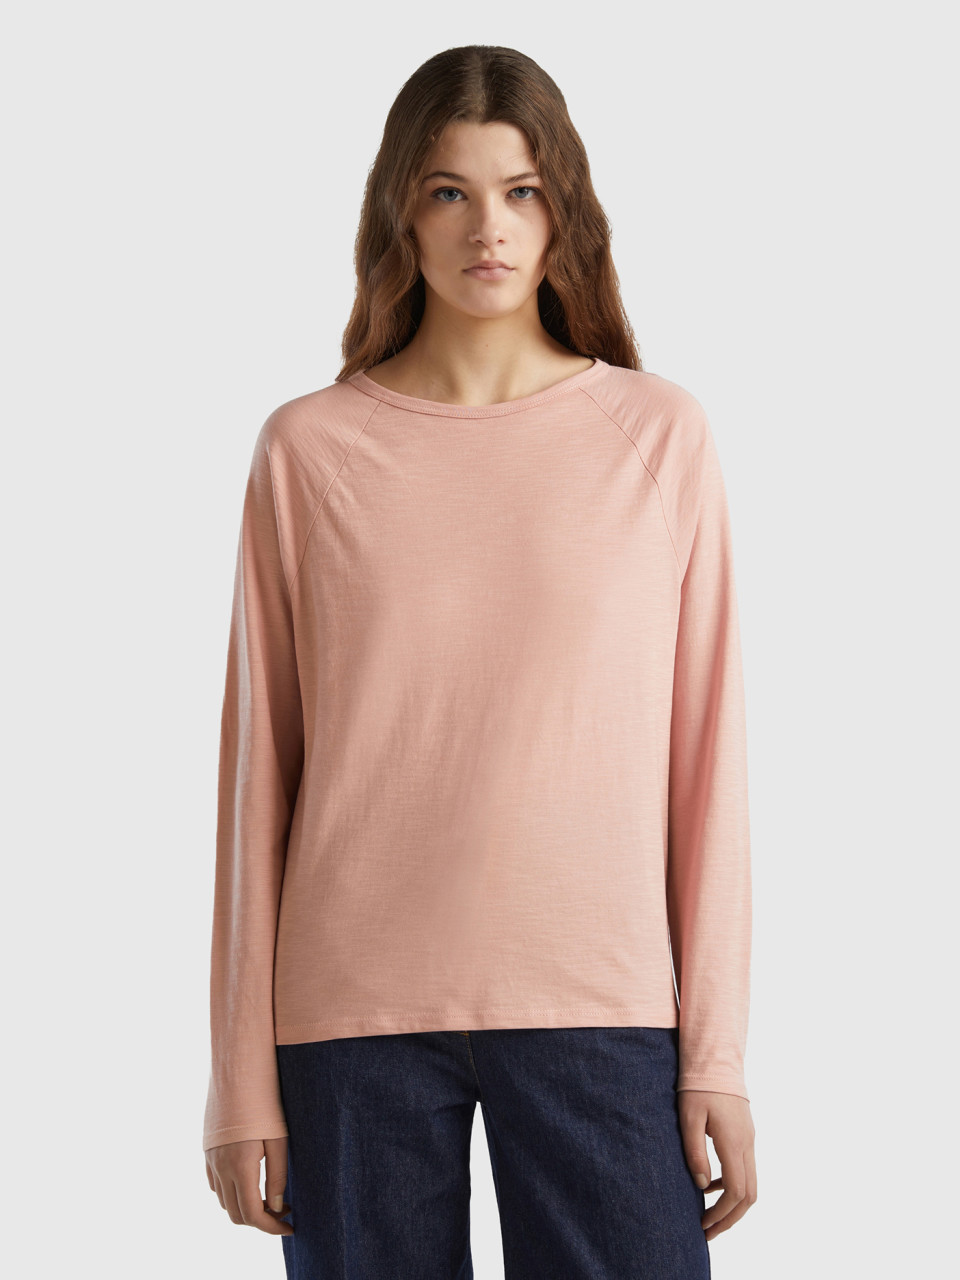 Benetton, Long Sleeve T-shirt In Light Cotton, Soft Pink, Women